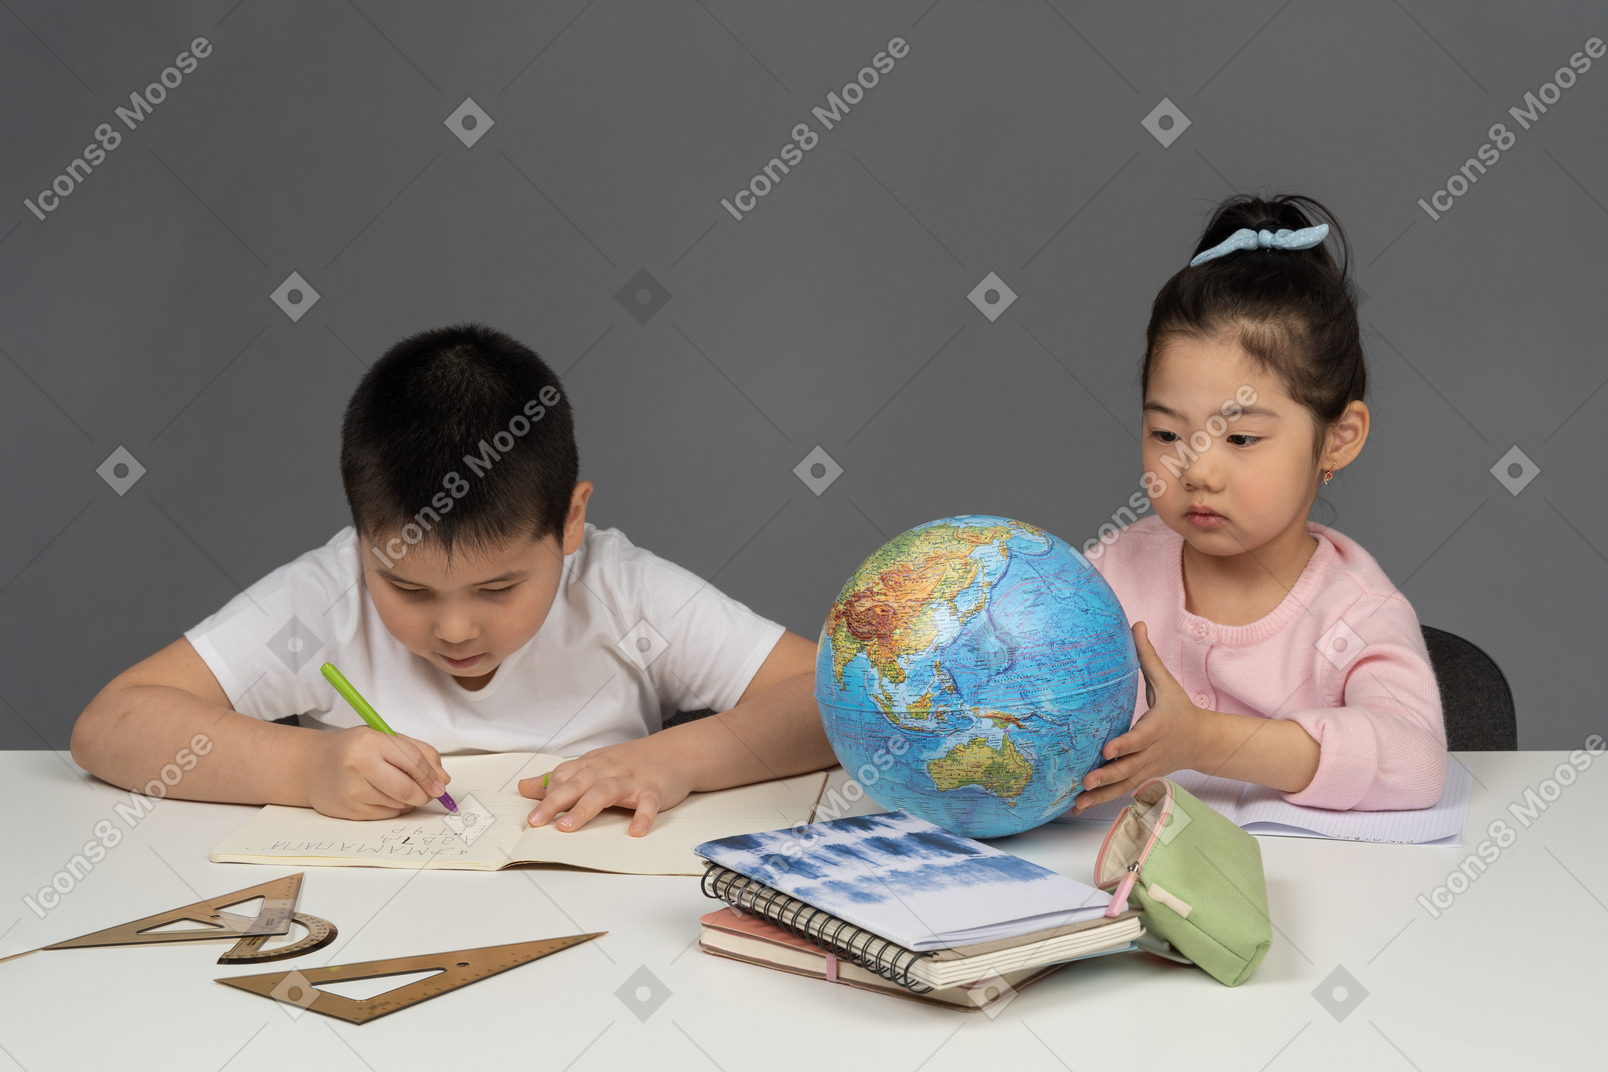 숙제를 하는 소년과 지구본을 보고 있는 소녀